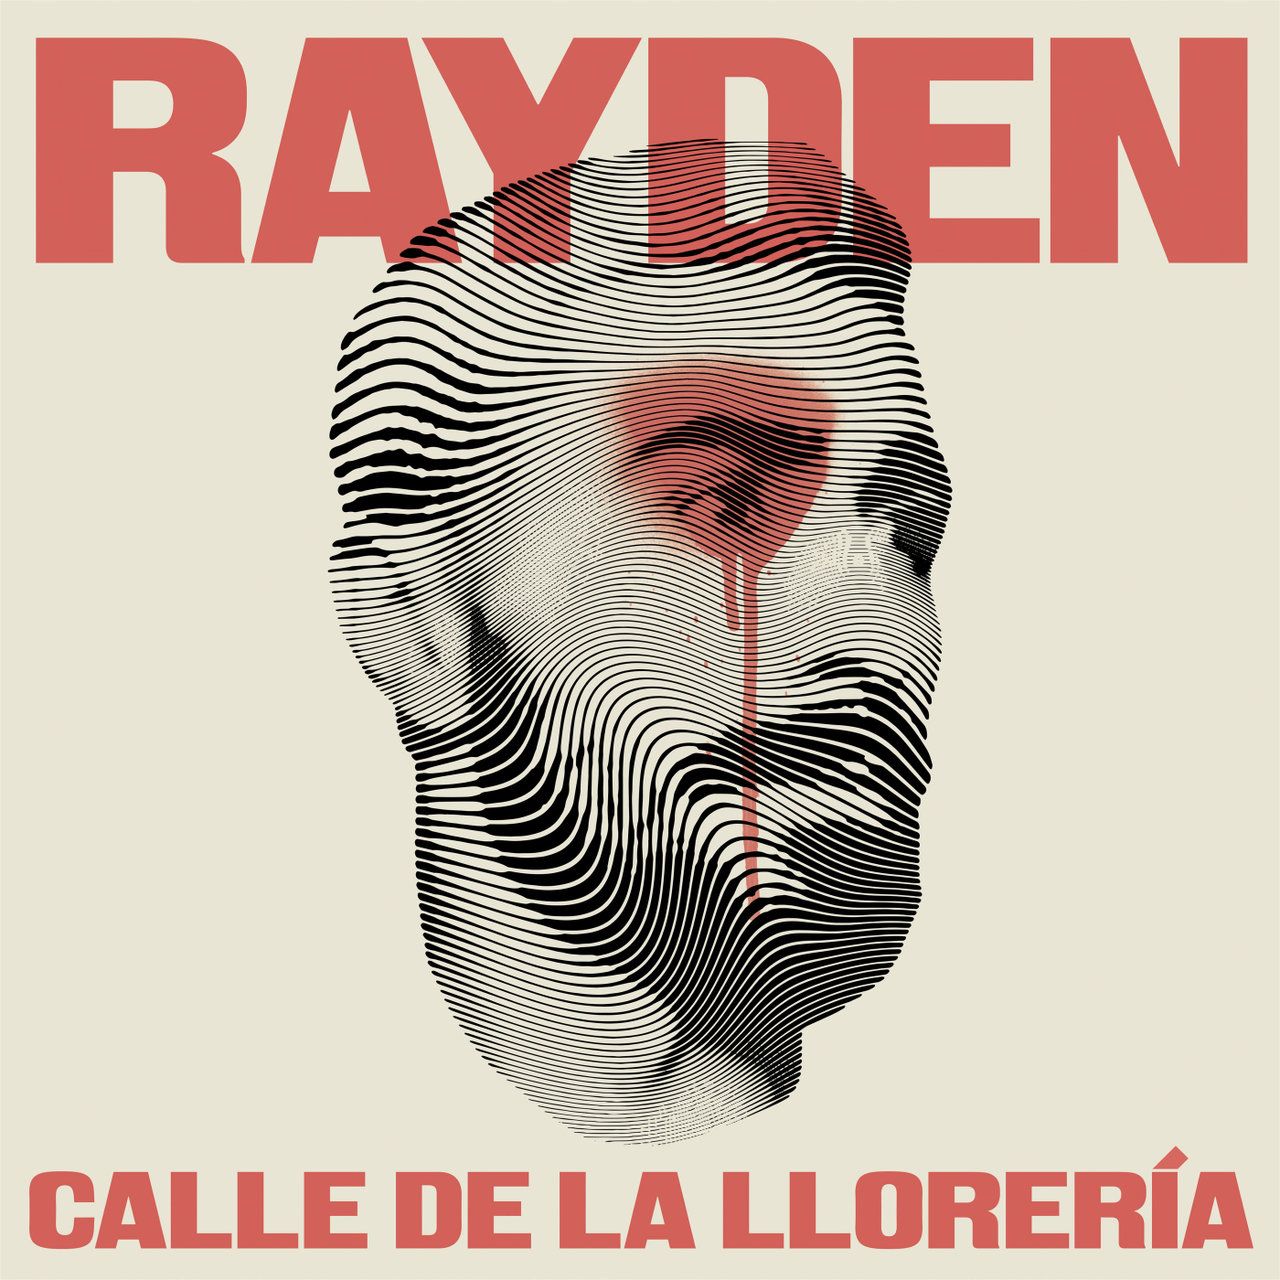 Rayden Calle de la Llorería cover artwork